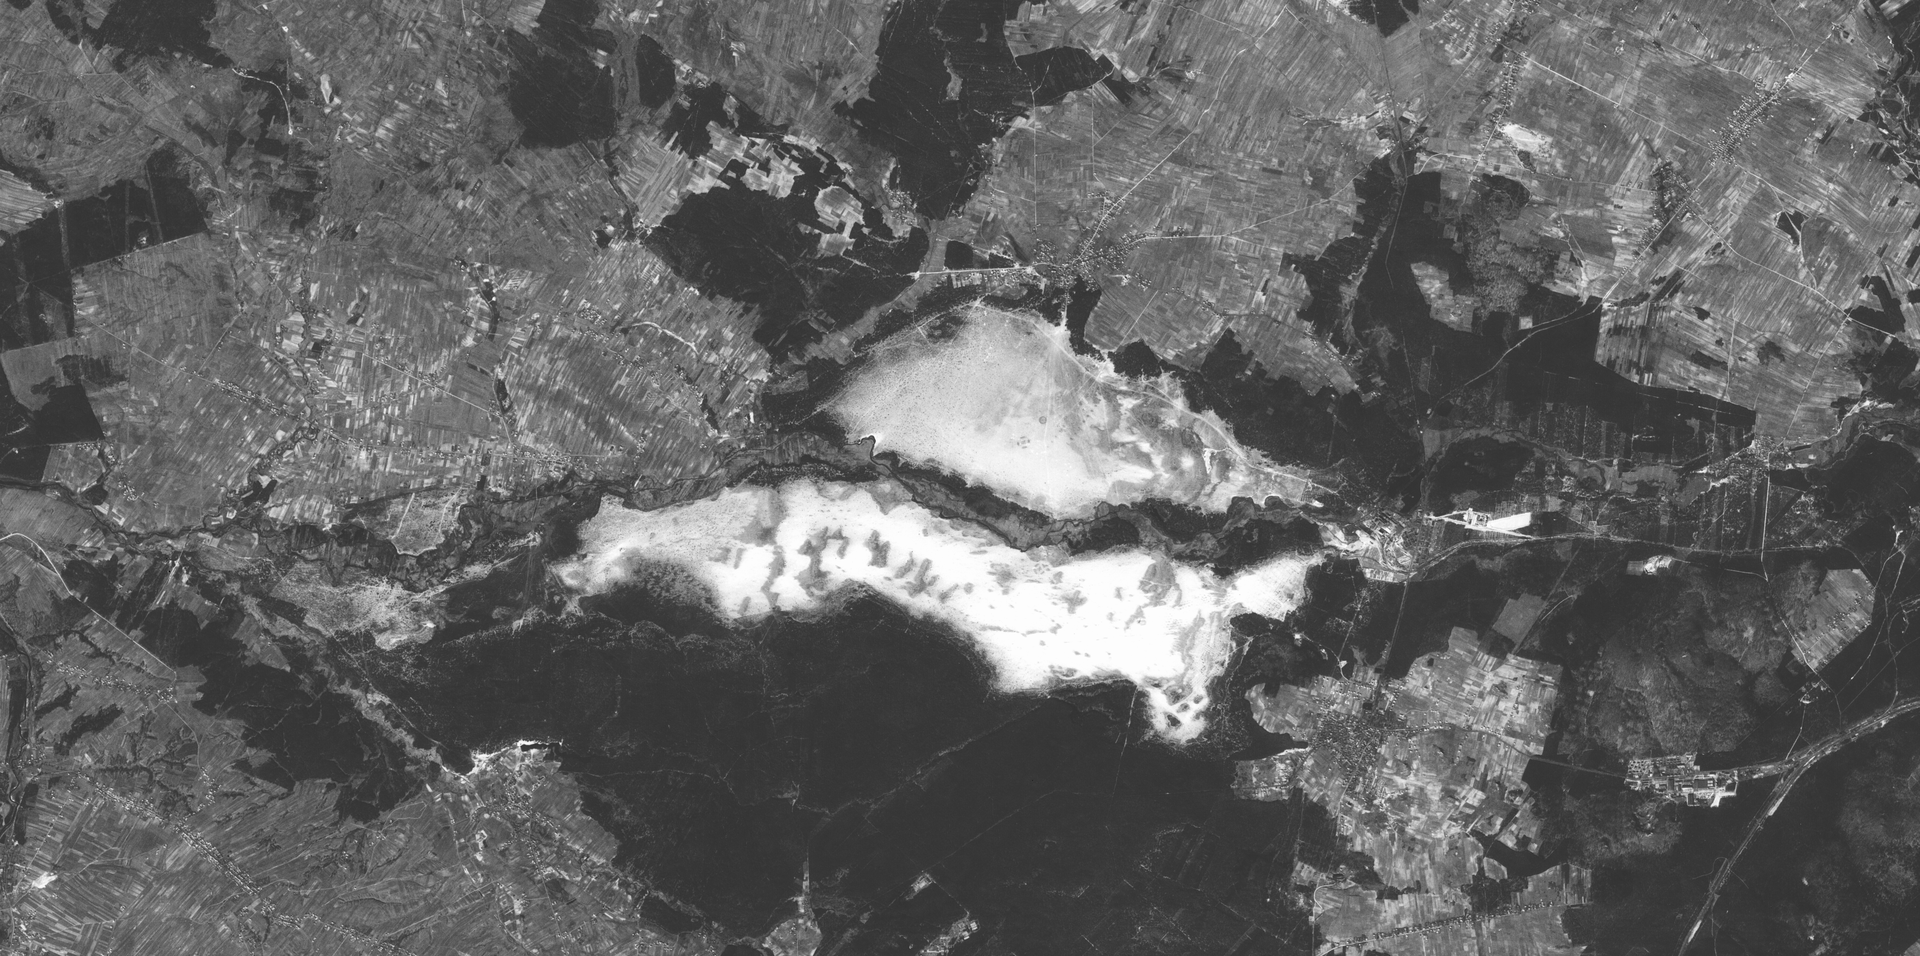 Zdjęcie satelitarne obszaru, w centrum którego znajduje się Pustynia Błędowska. Ma ona postać dwóch podłużnych, poziomych i równoległych względem siebie jasnych obszarów. Są oddzielone od siebie wąskim, ciemniejszym pasem teren.    